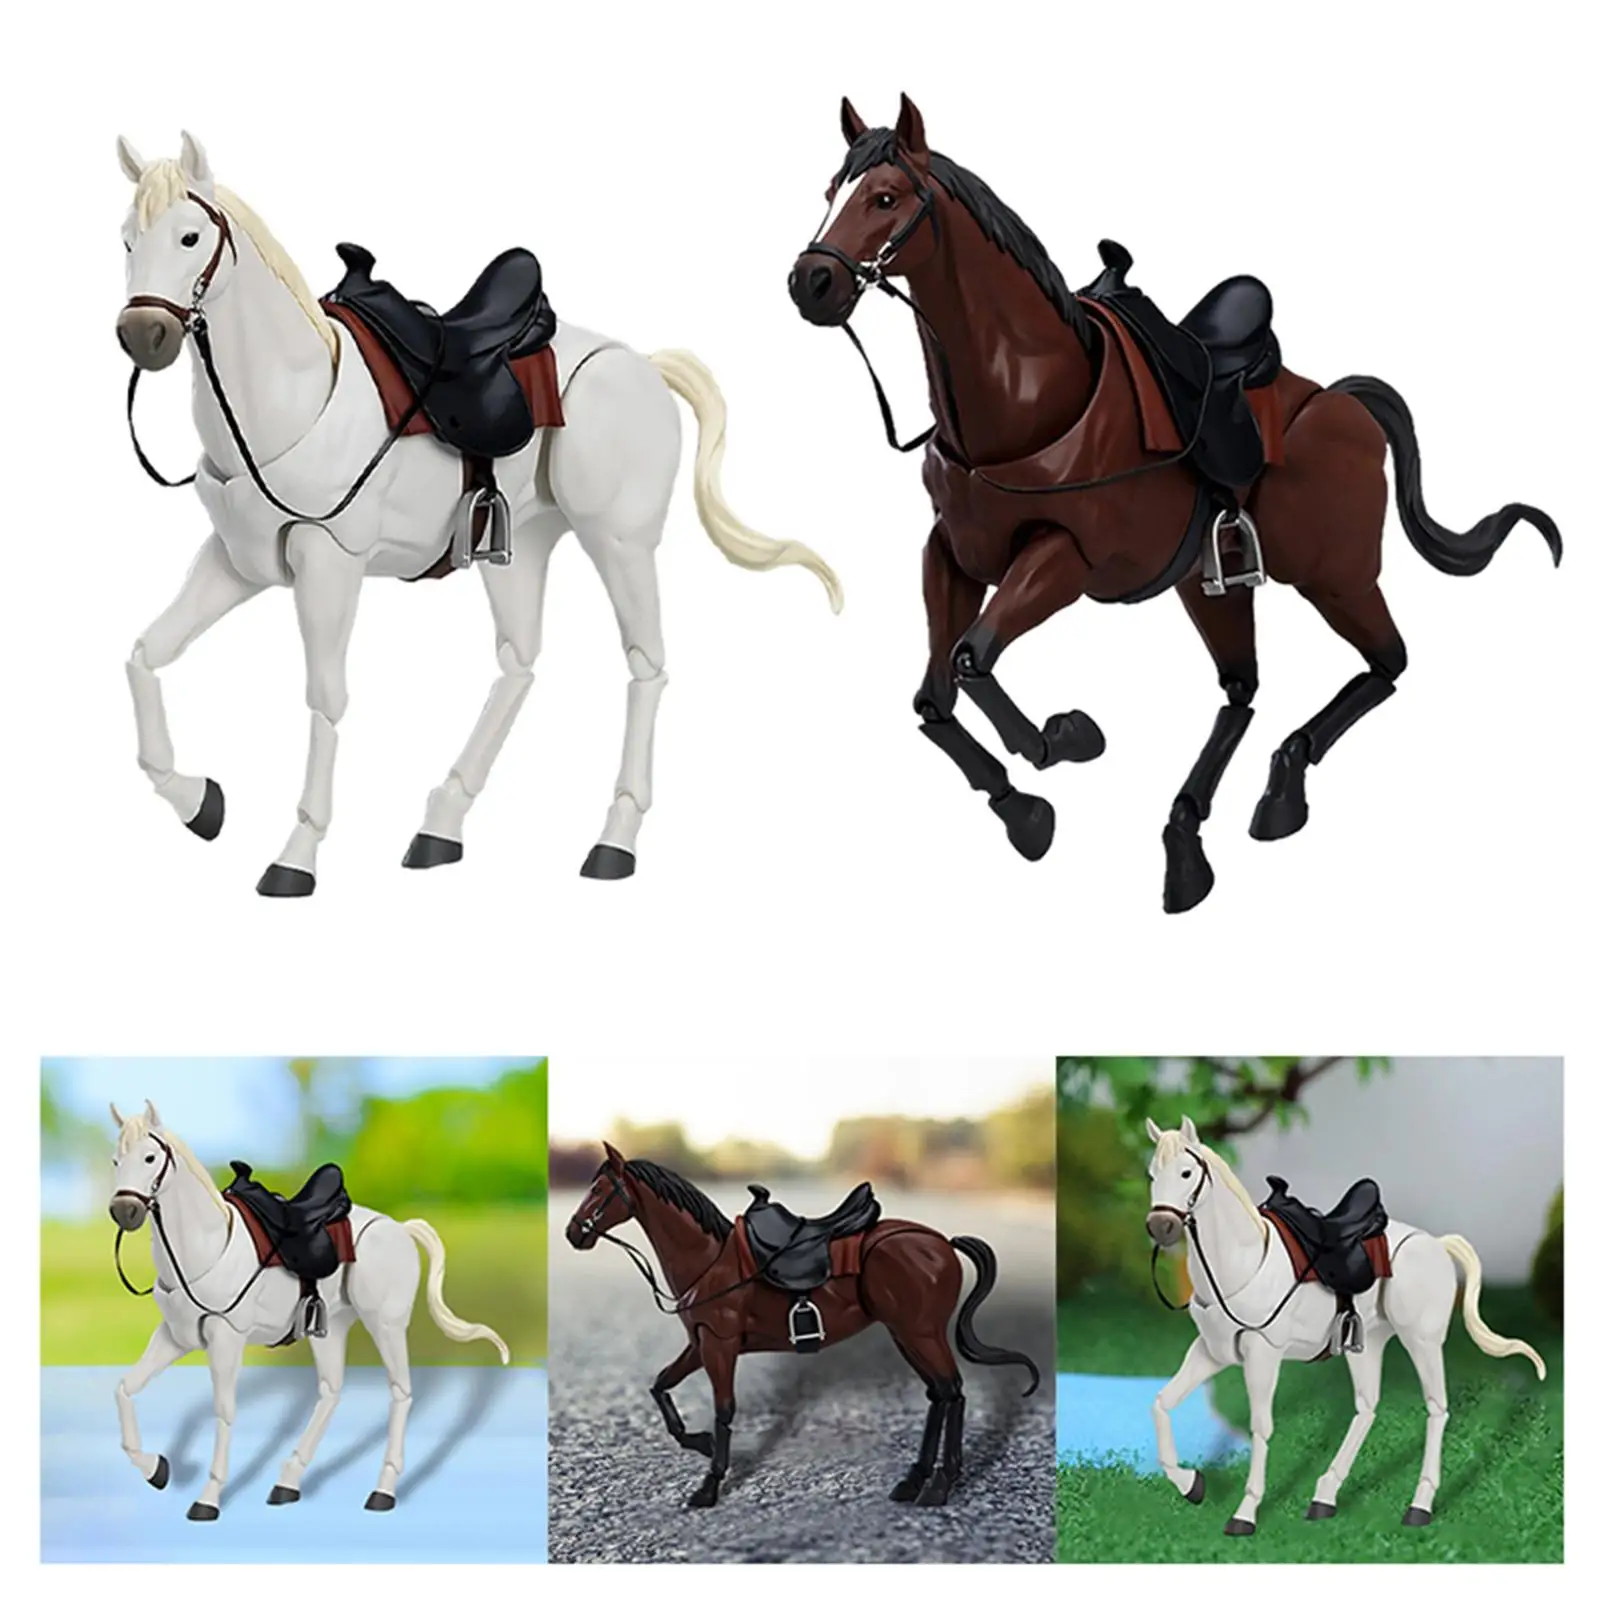 

Миниатюрная фигурка лошади, Реалистичная масштабная фигурка животного в масштабе 1:12, аксессуар «сделай сам» для проектов, миниатюрные декорации